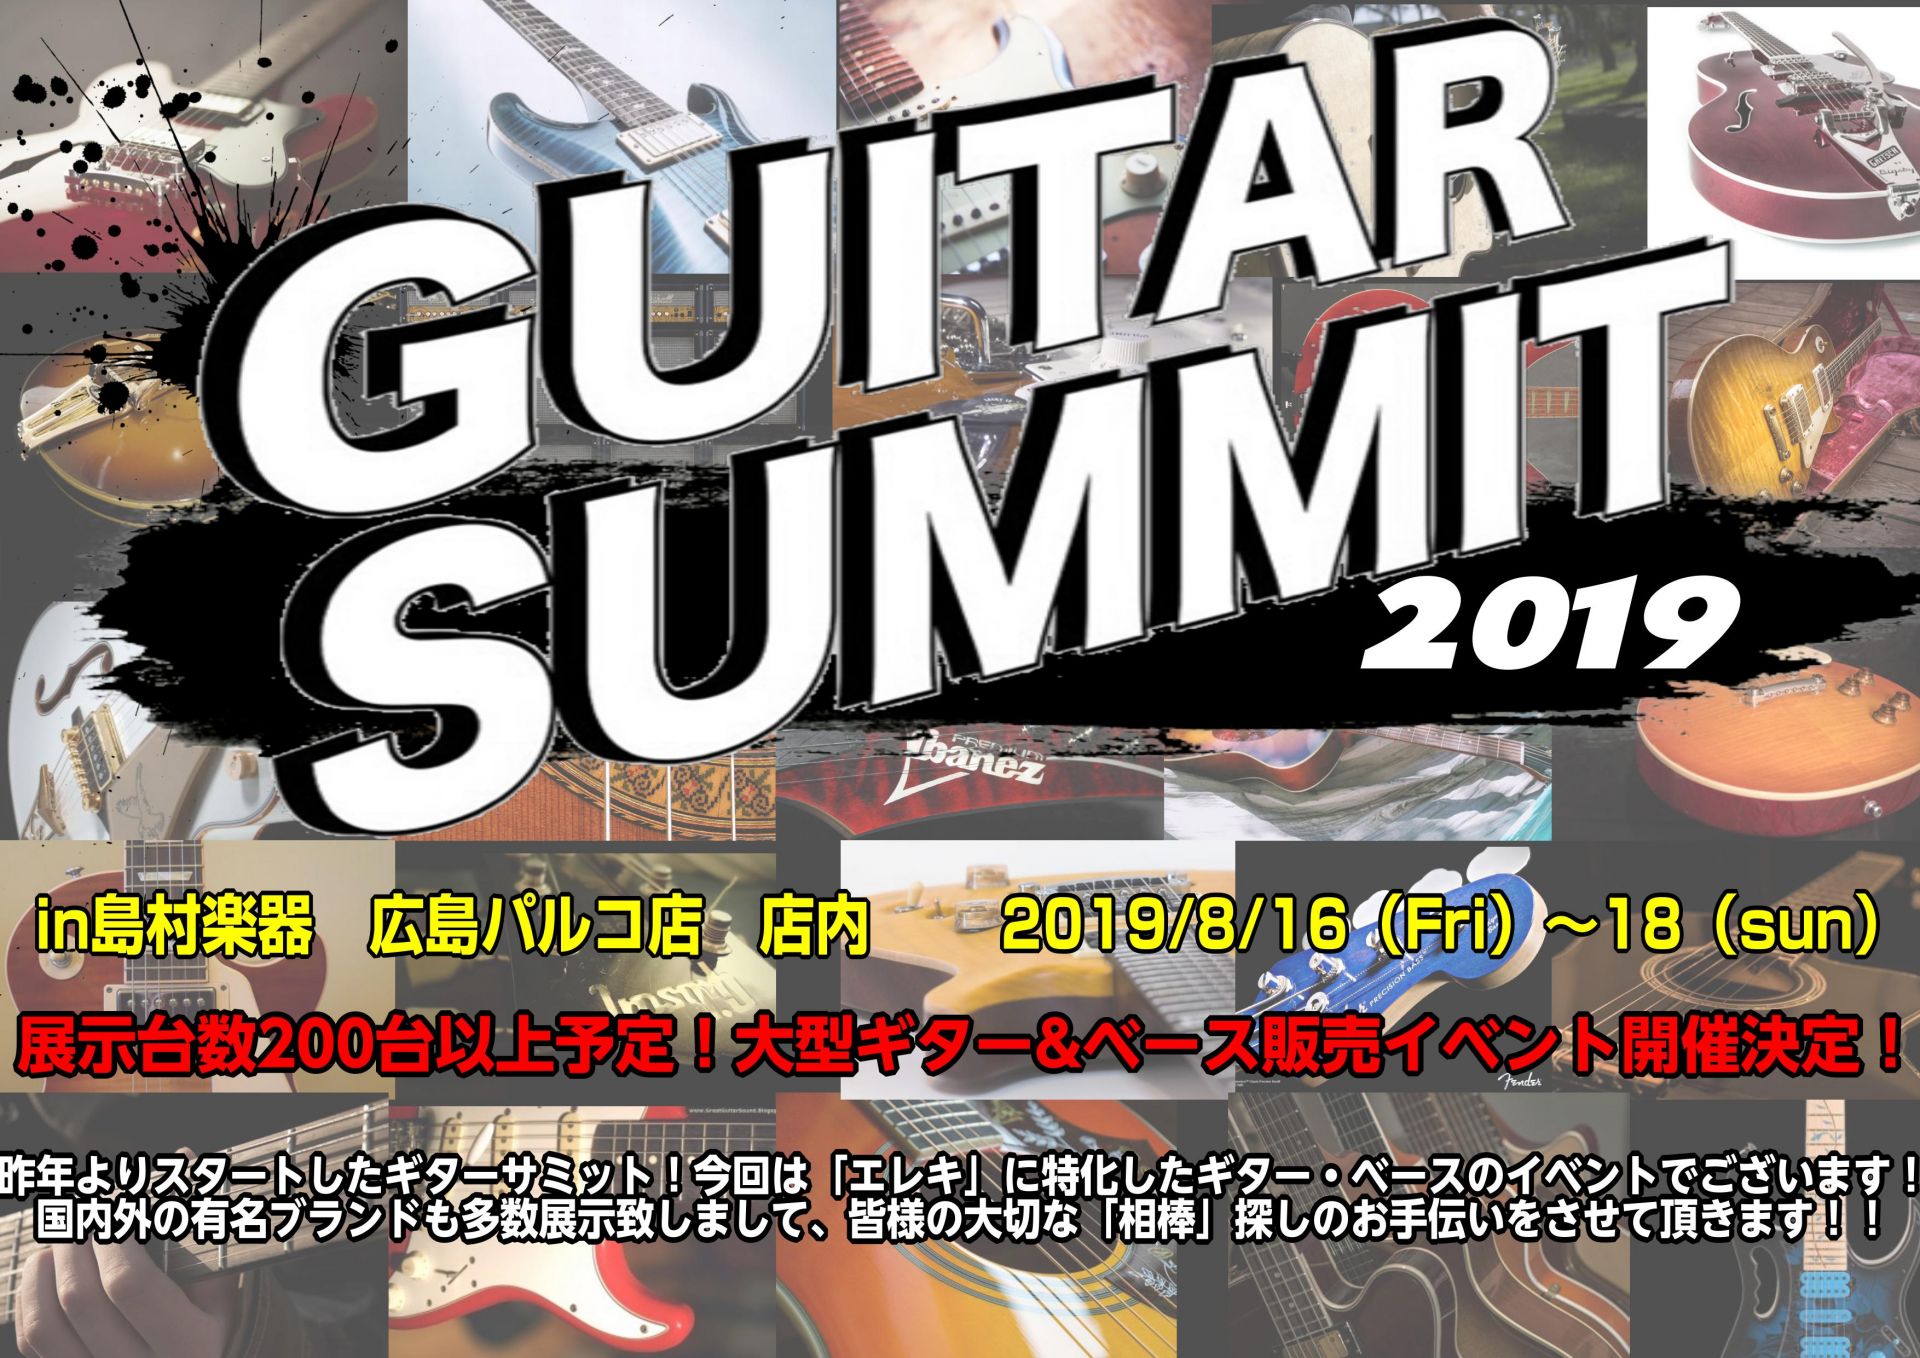 【イベント】ギターサミットforエレクトリック2019開催決定！ ※7/10更新